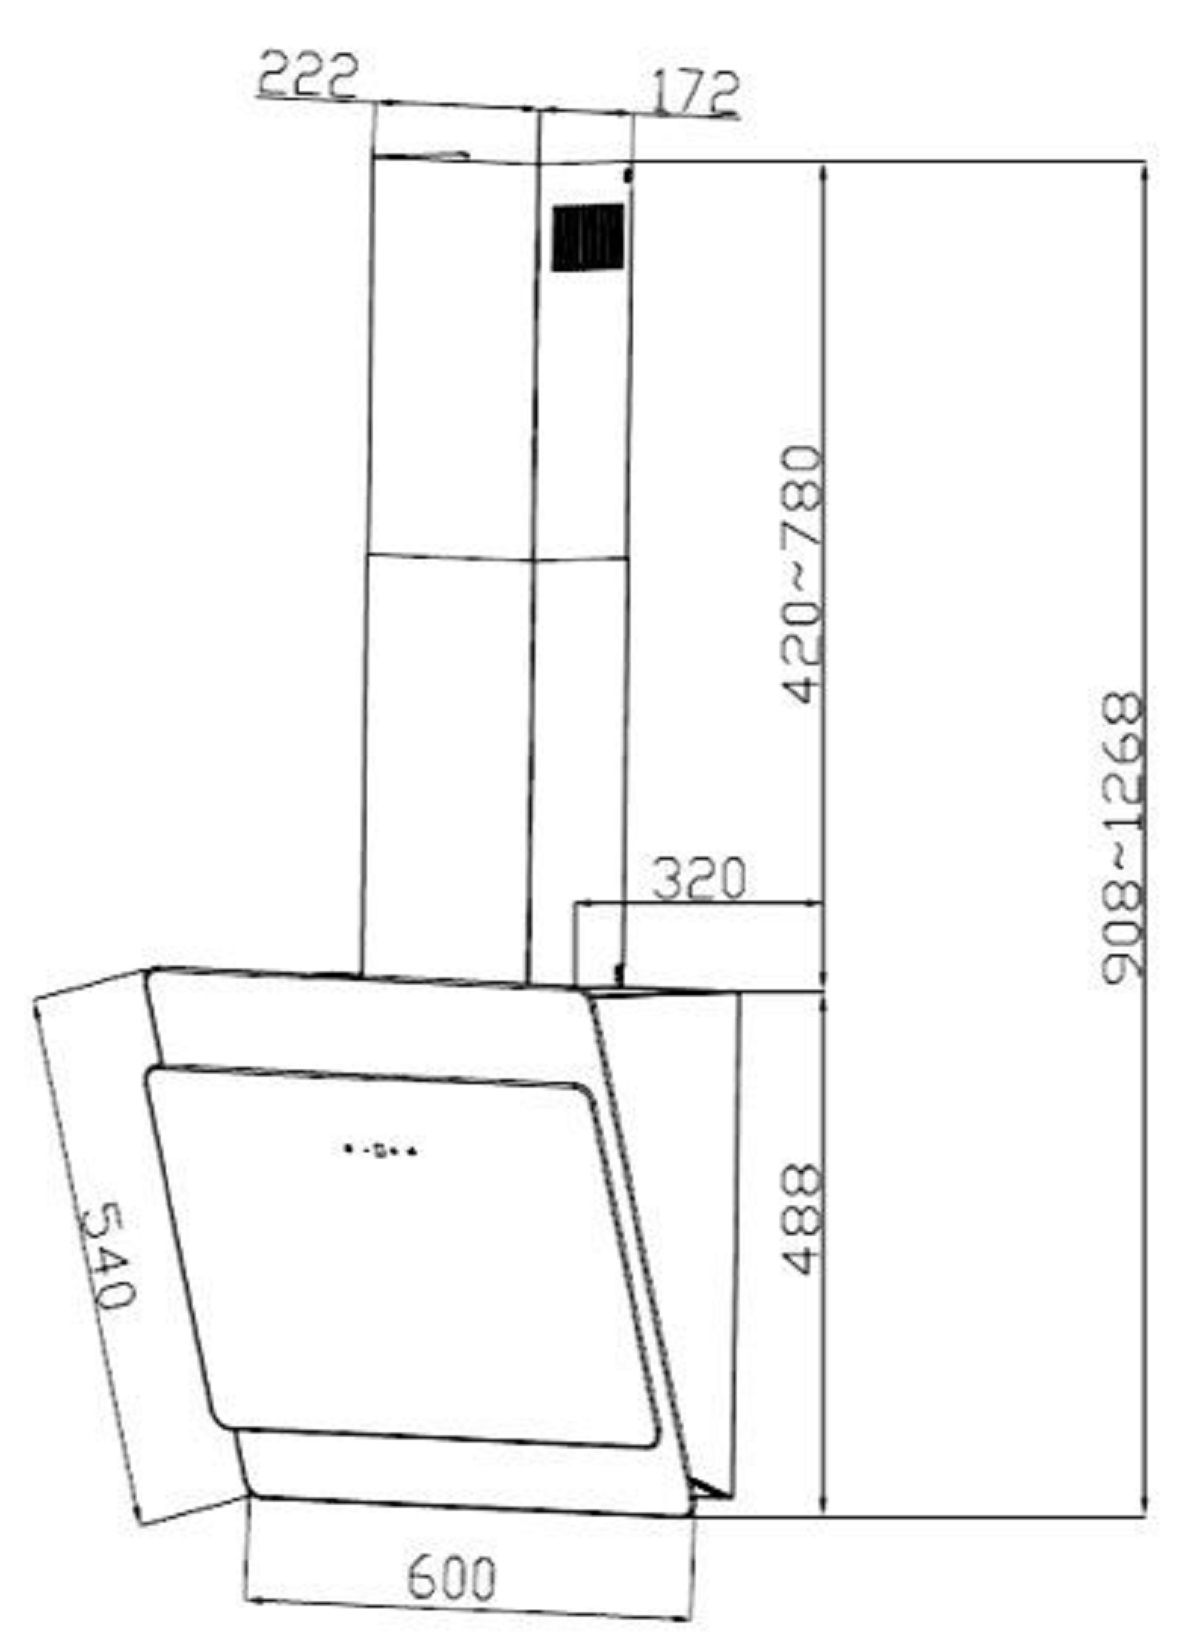 PKM S3-60 ABTZ, Dunstabzugshaube (600 mm mm 320 tief) breit